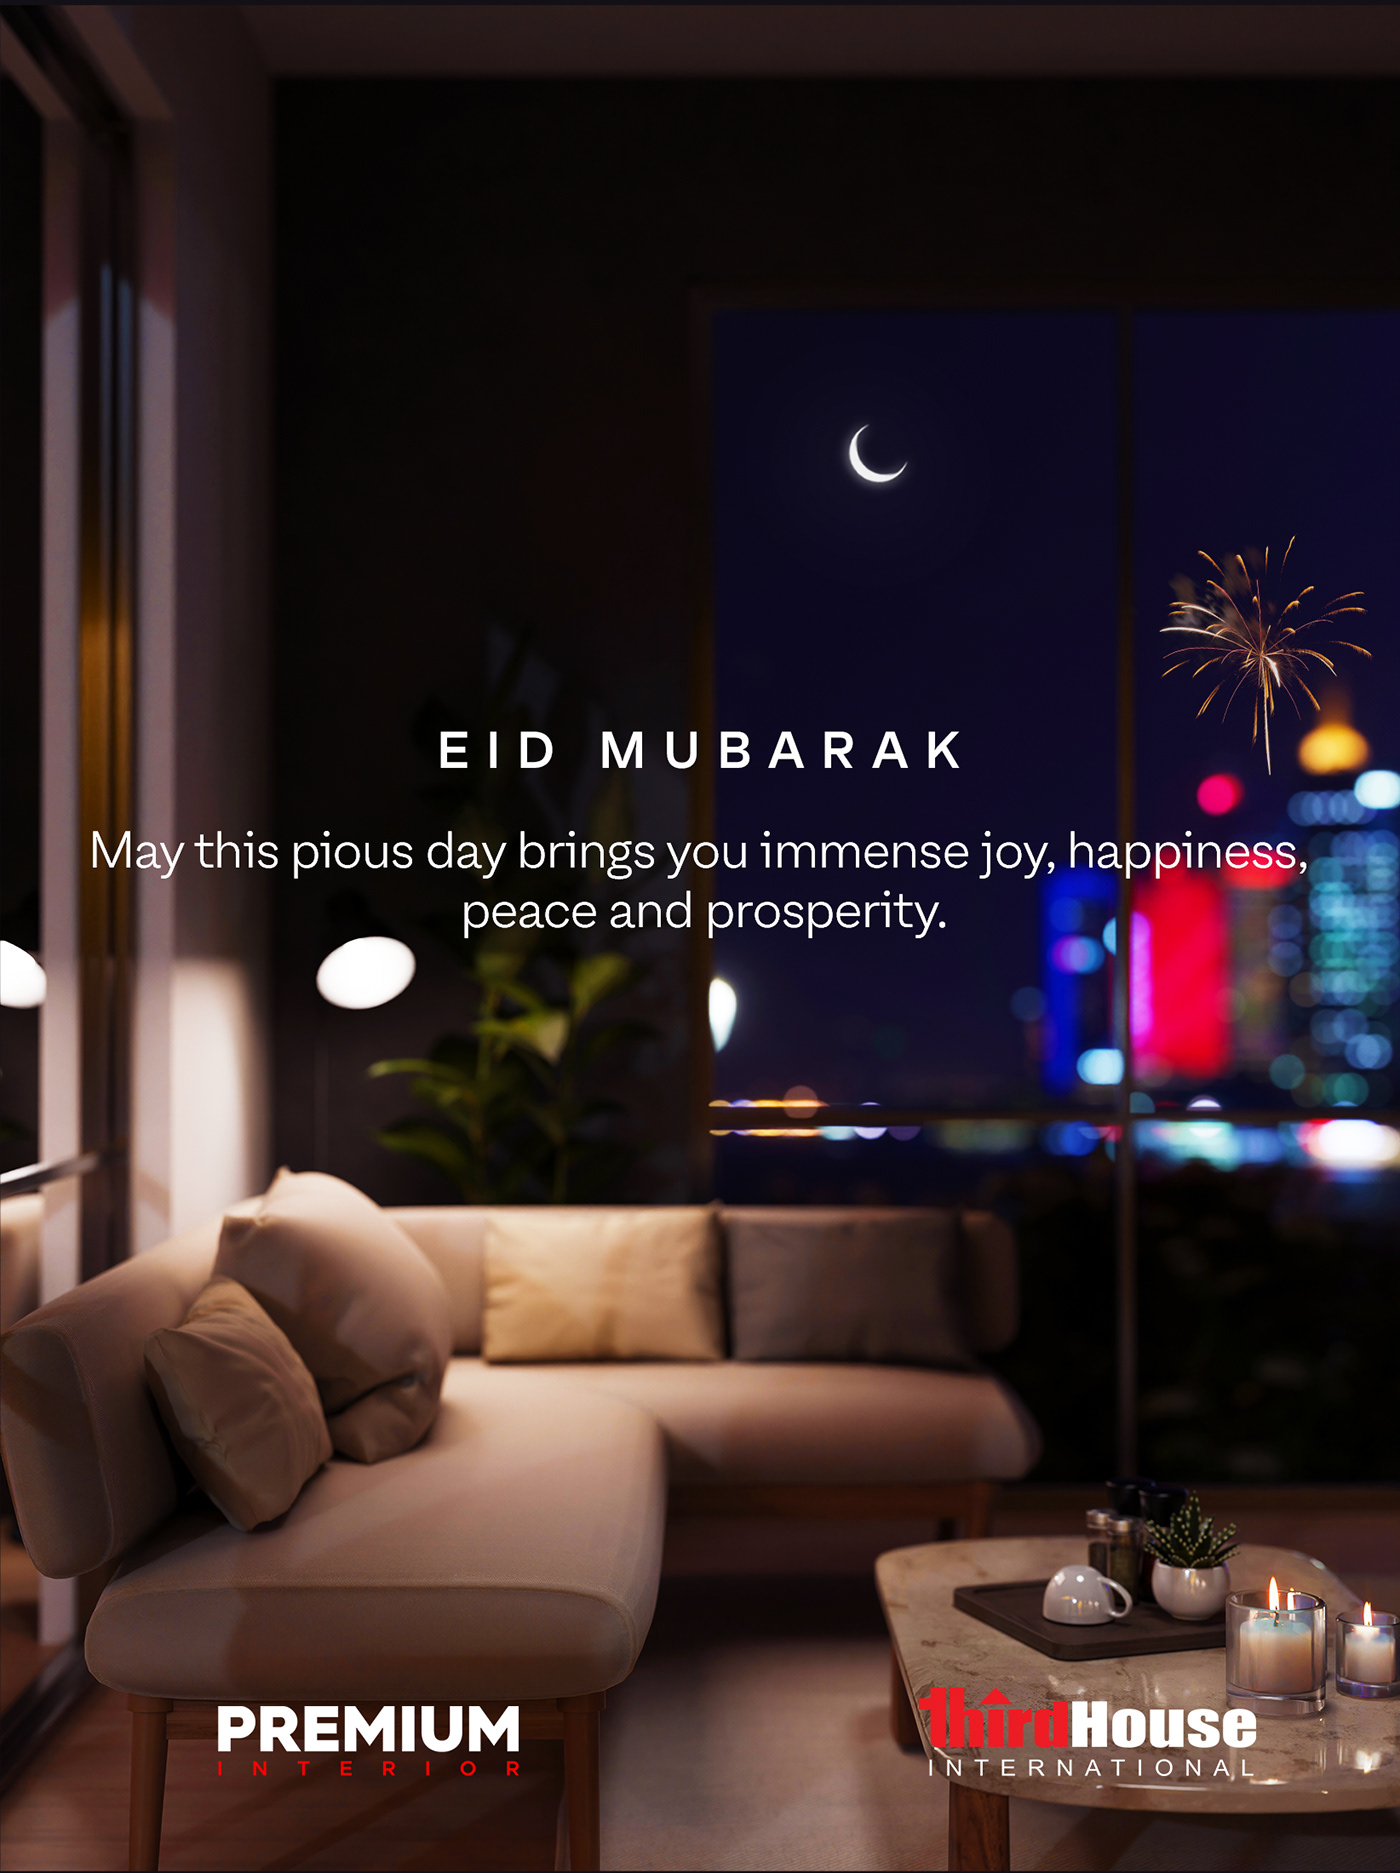 Eid social media banner